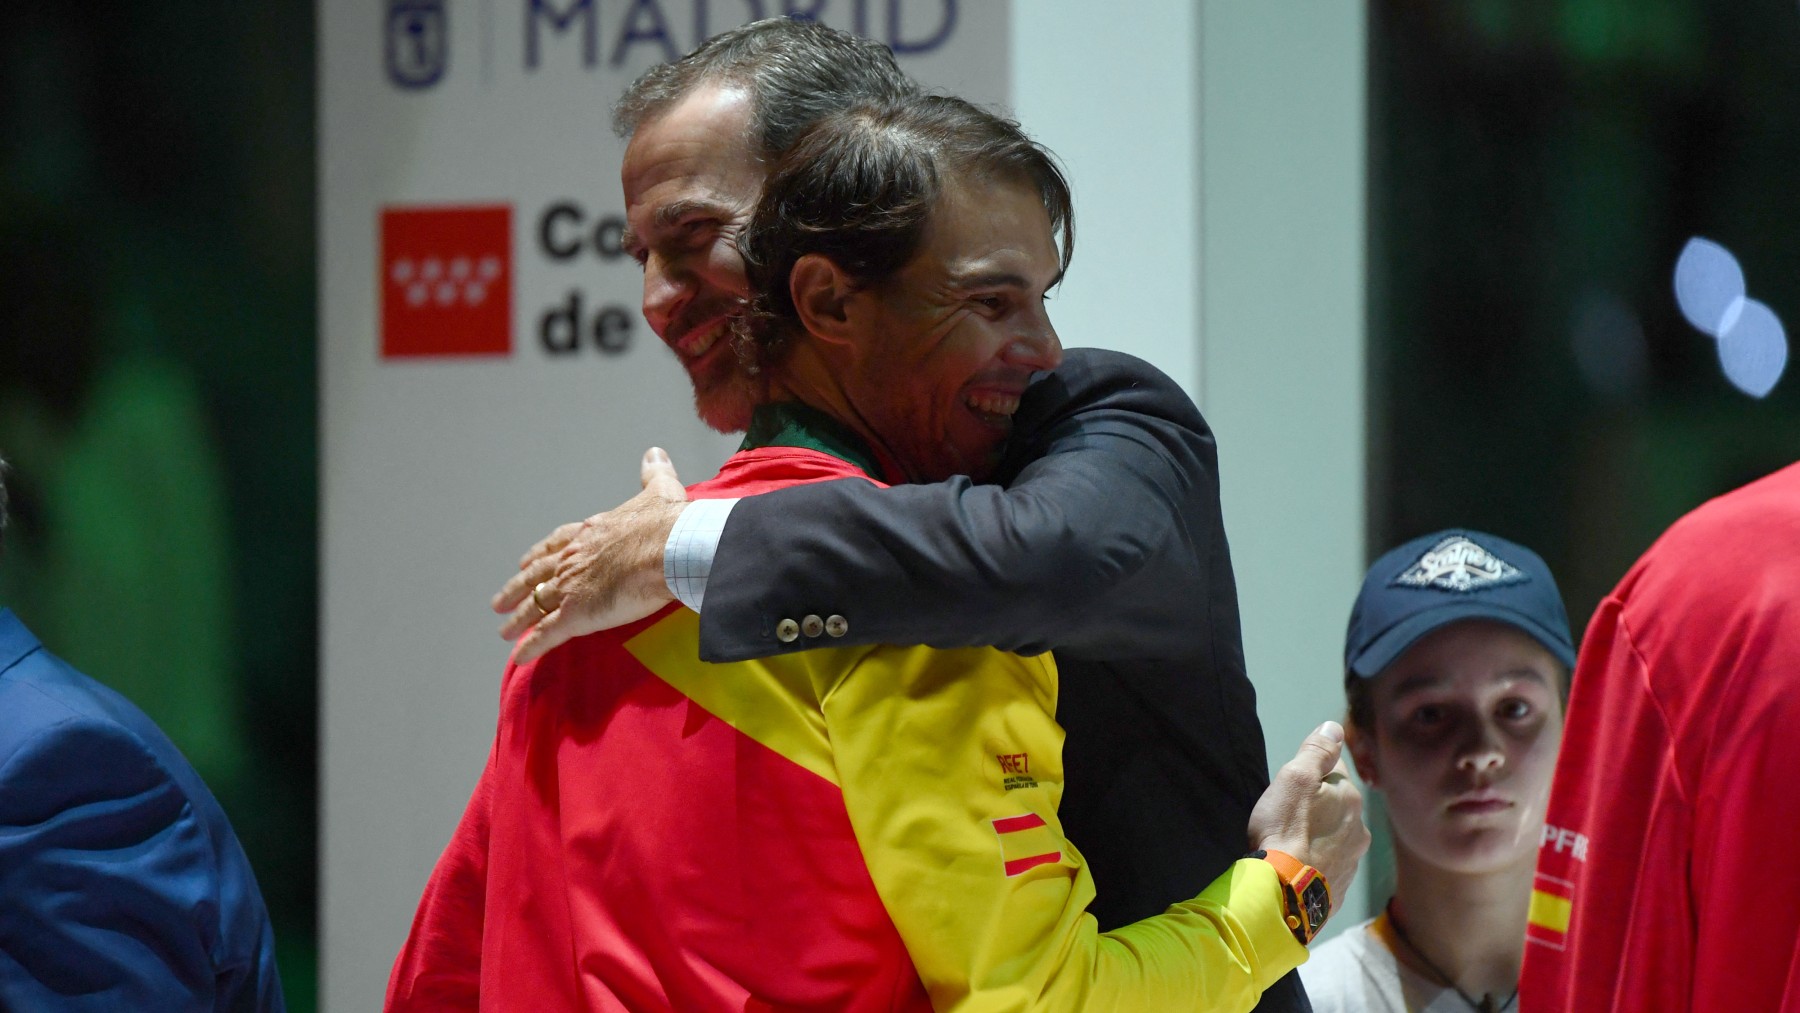 Rafael Nadal y Felipe VI se funden en un abrazo en la Copa Davis 2019. (AFP)